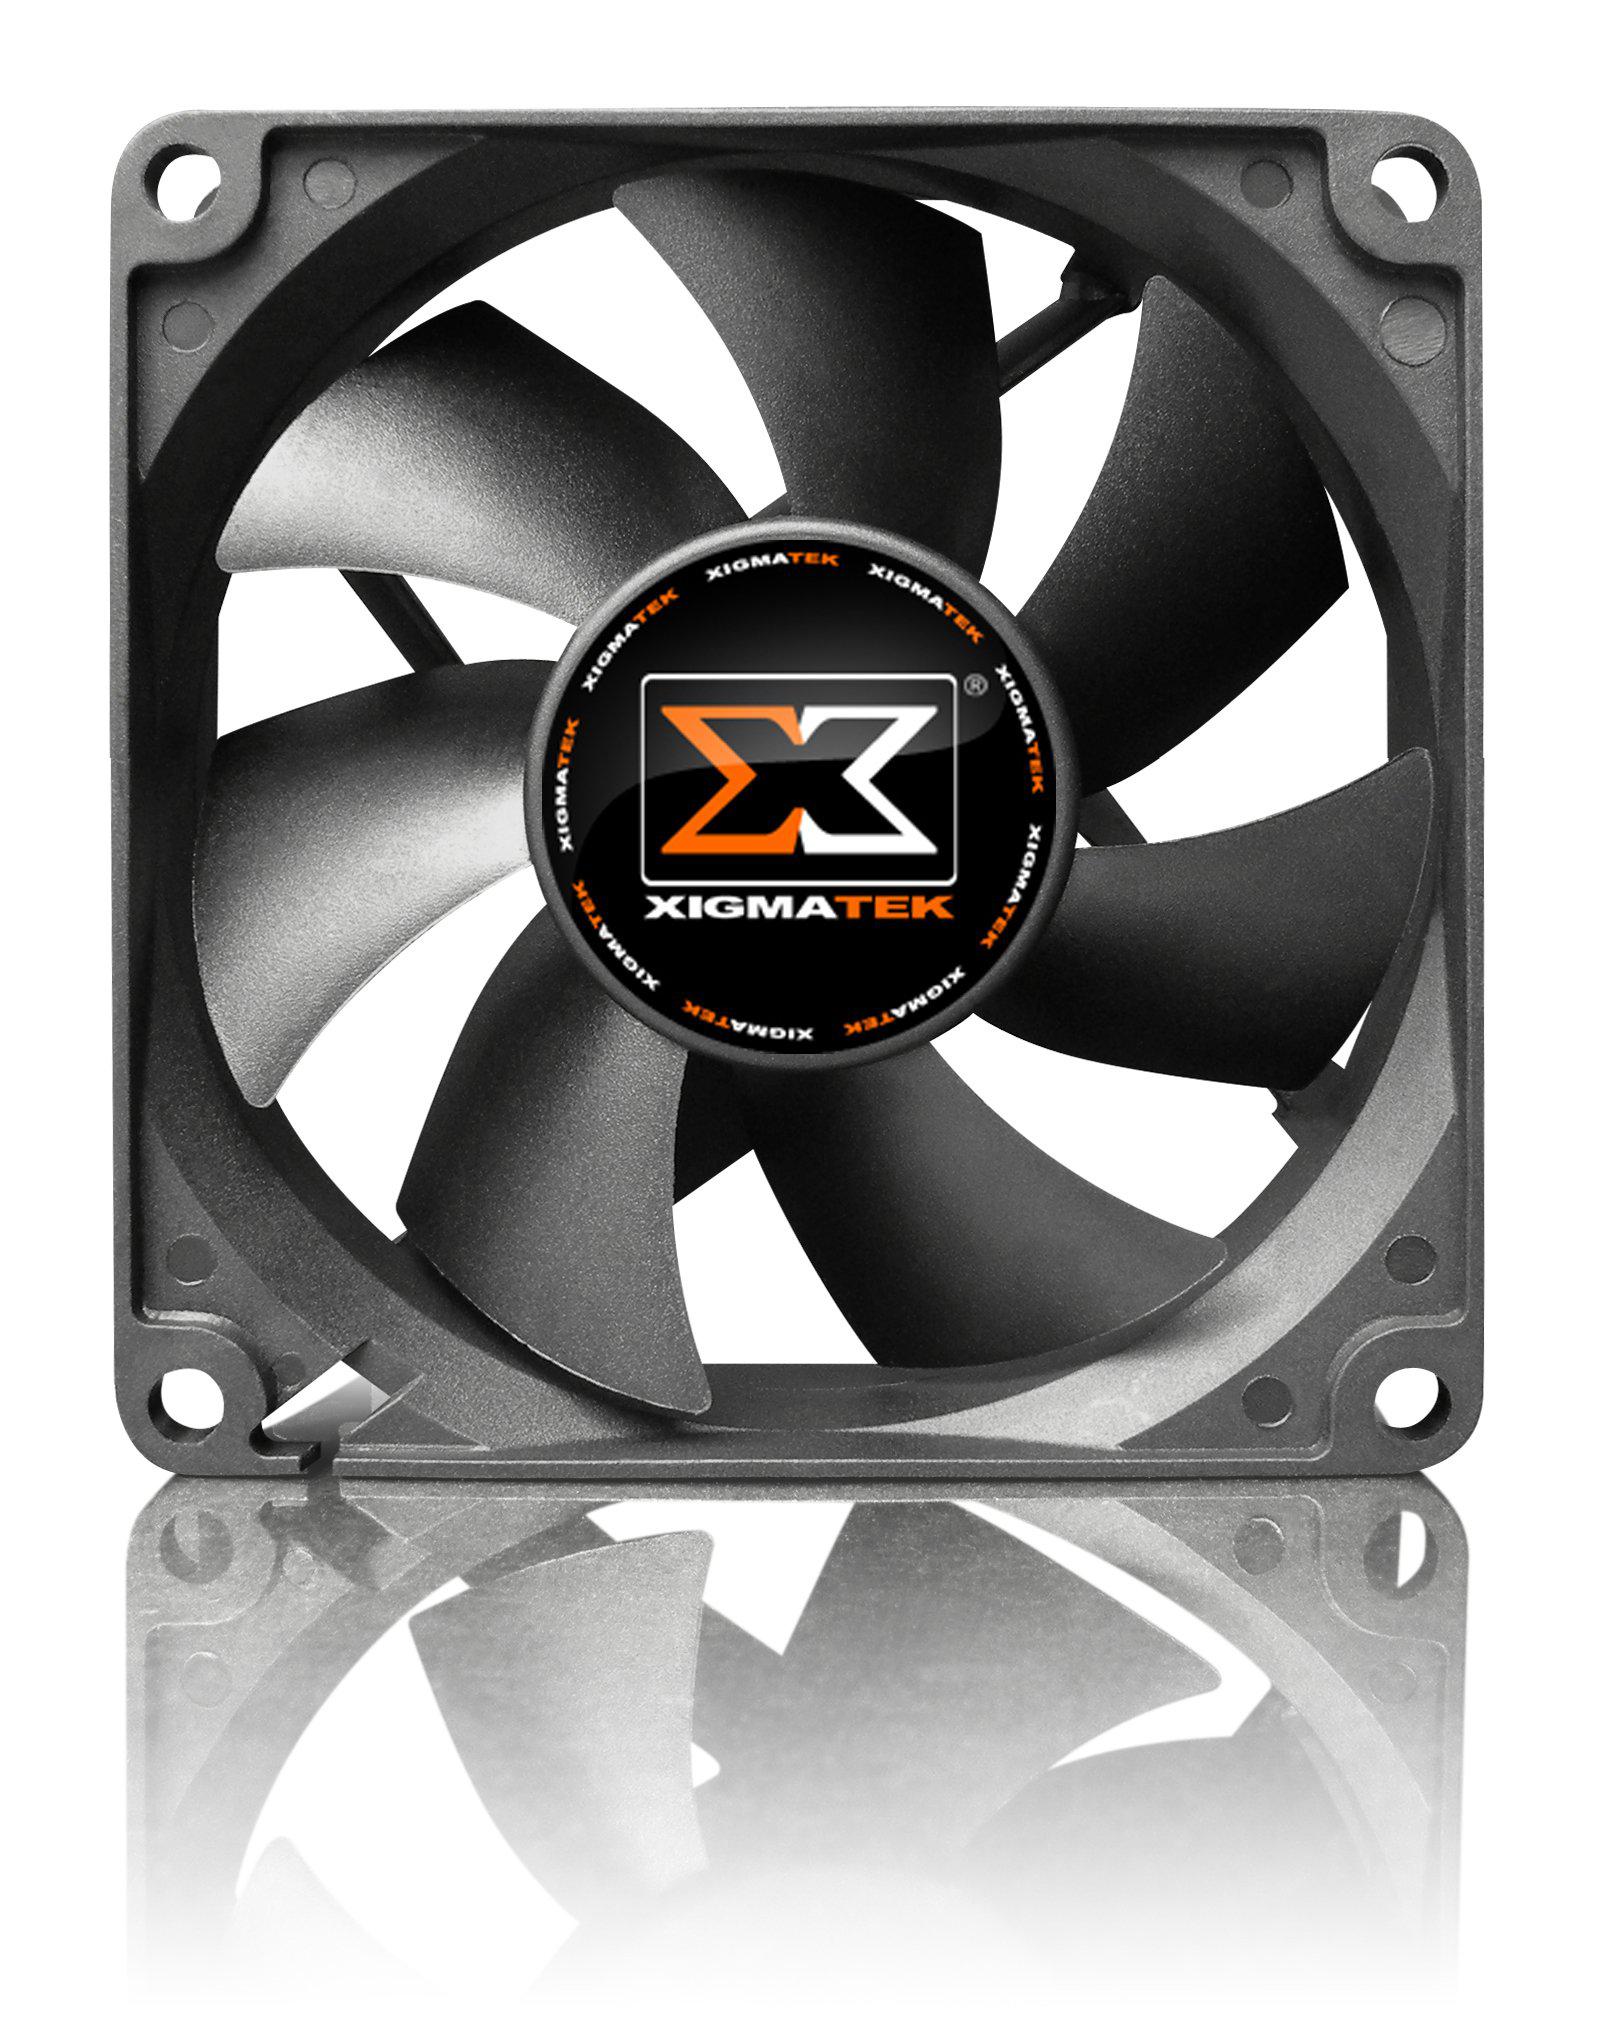 xigmatek computer case cooling fan xsf-f8252